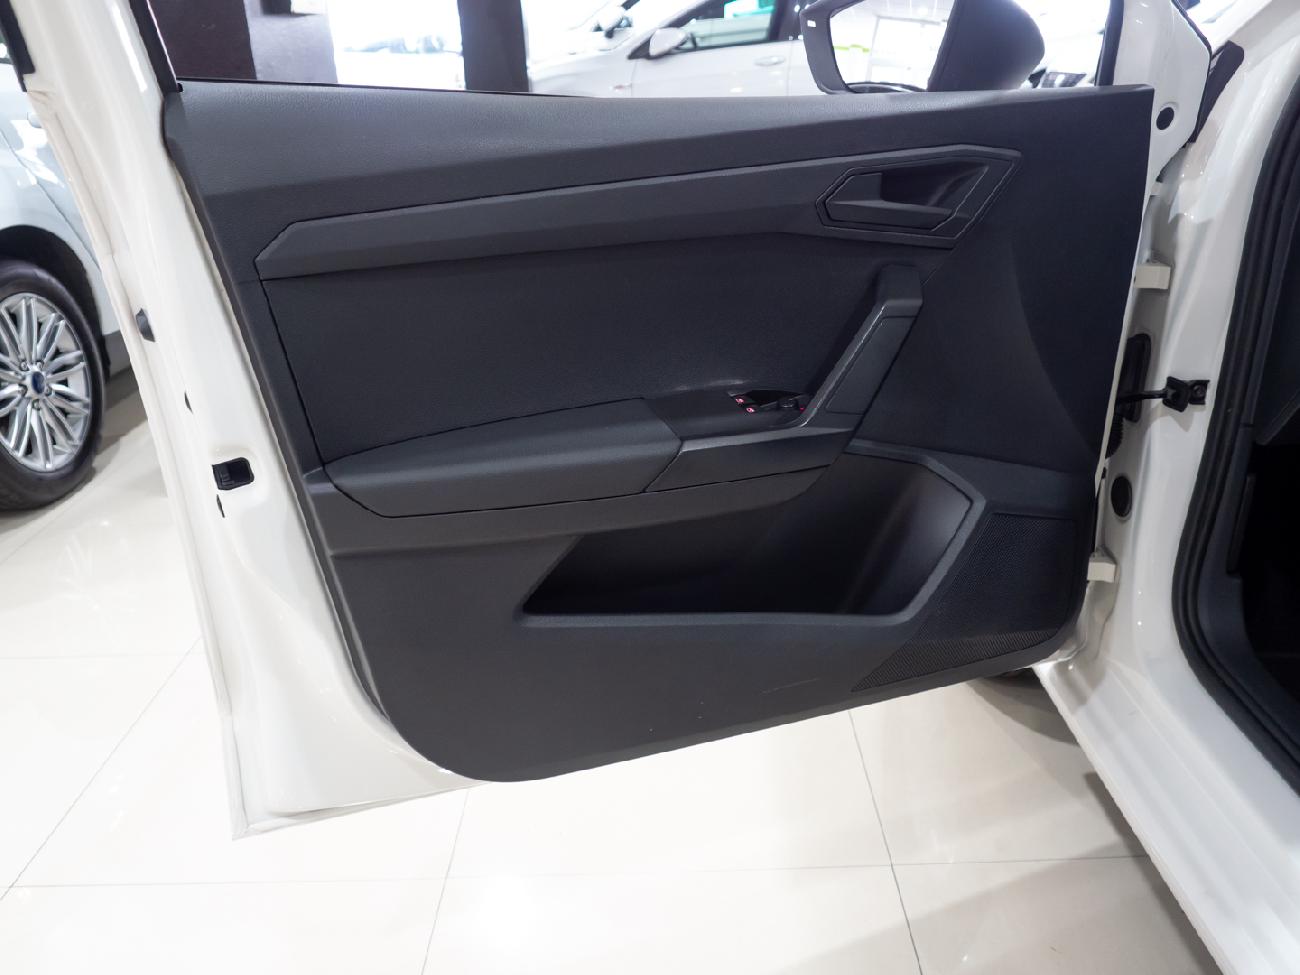 2019 Seat Ibiza Ibiza 1.6 TDI (80CV) REFERENCE PLUS coche de segunda mano